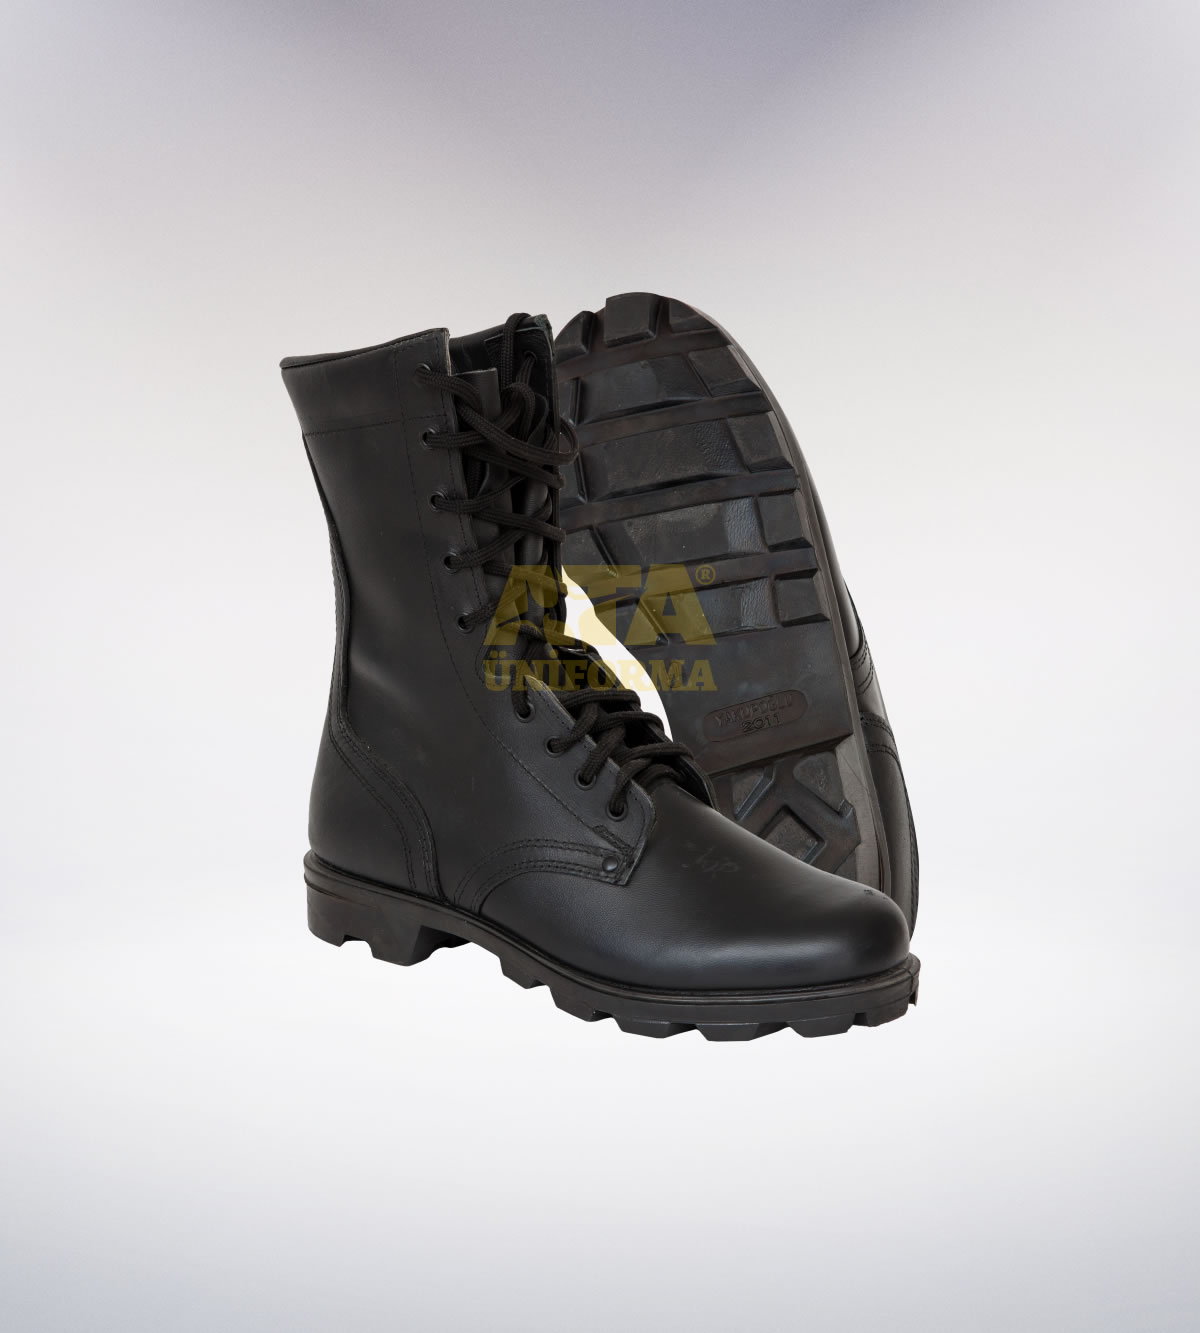 ATA 161 - arka - Pantolon kışlık - mont - aksesuar reflektör - güvenlik elbiseleri | güvenlik üniformaları | güvenlik kıyafetleri 